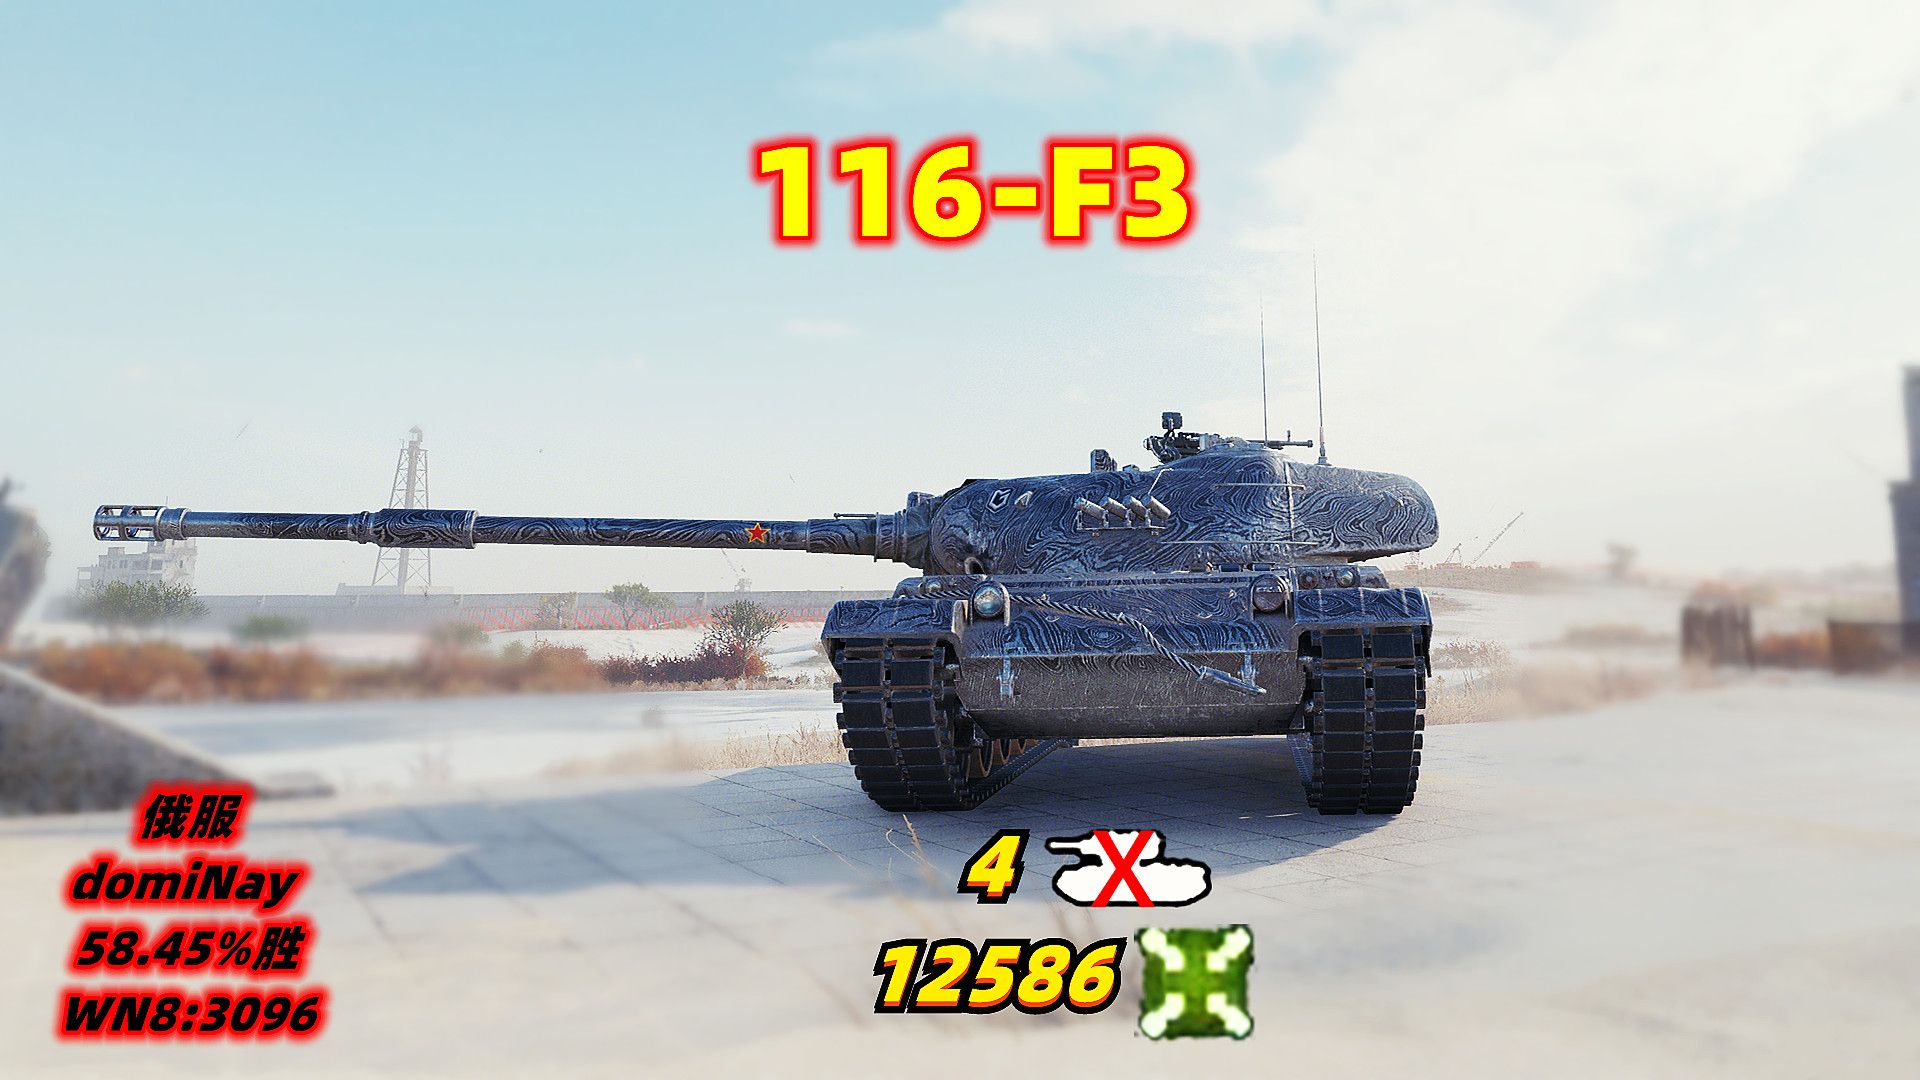 坦克世界	116-F3	❤	4杀/12586伤	俄服		58.45%胜	WN8:3096